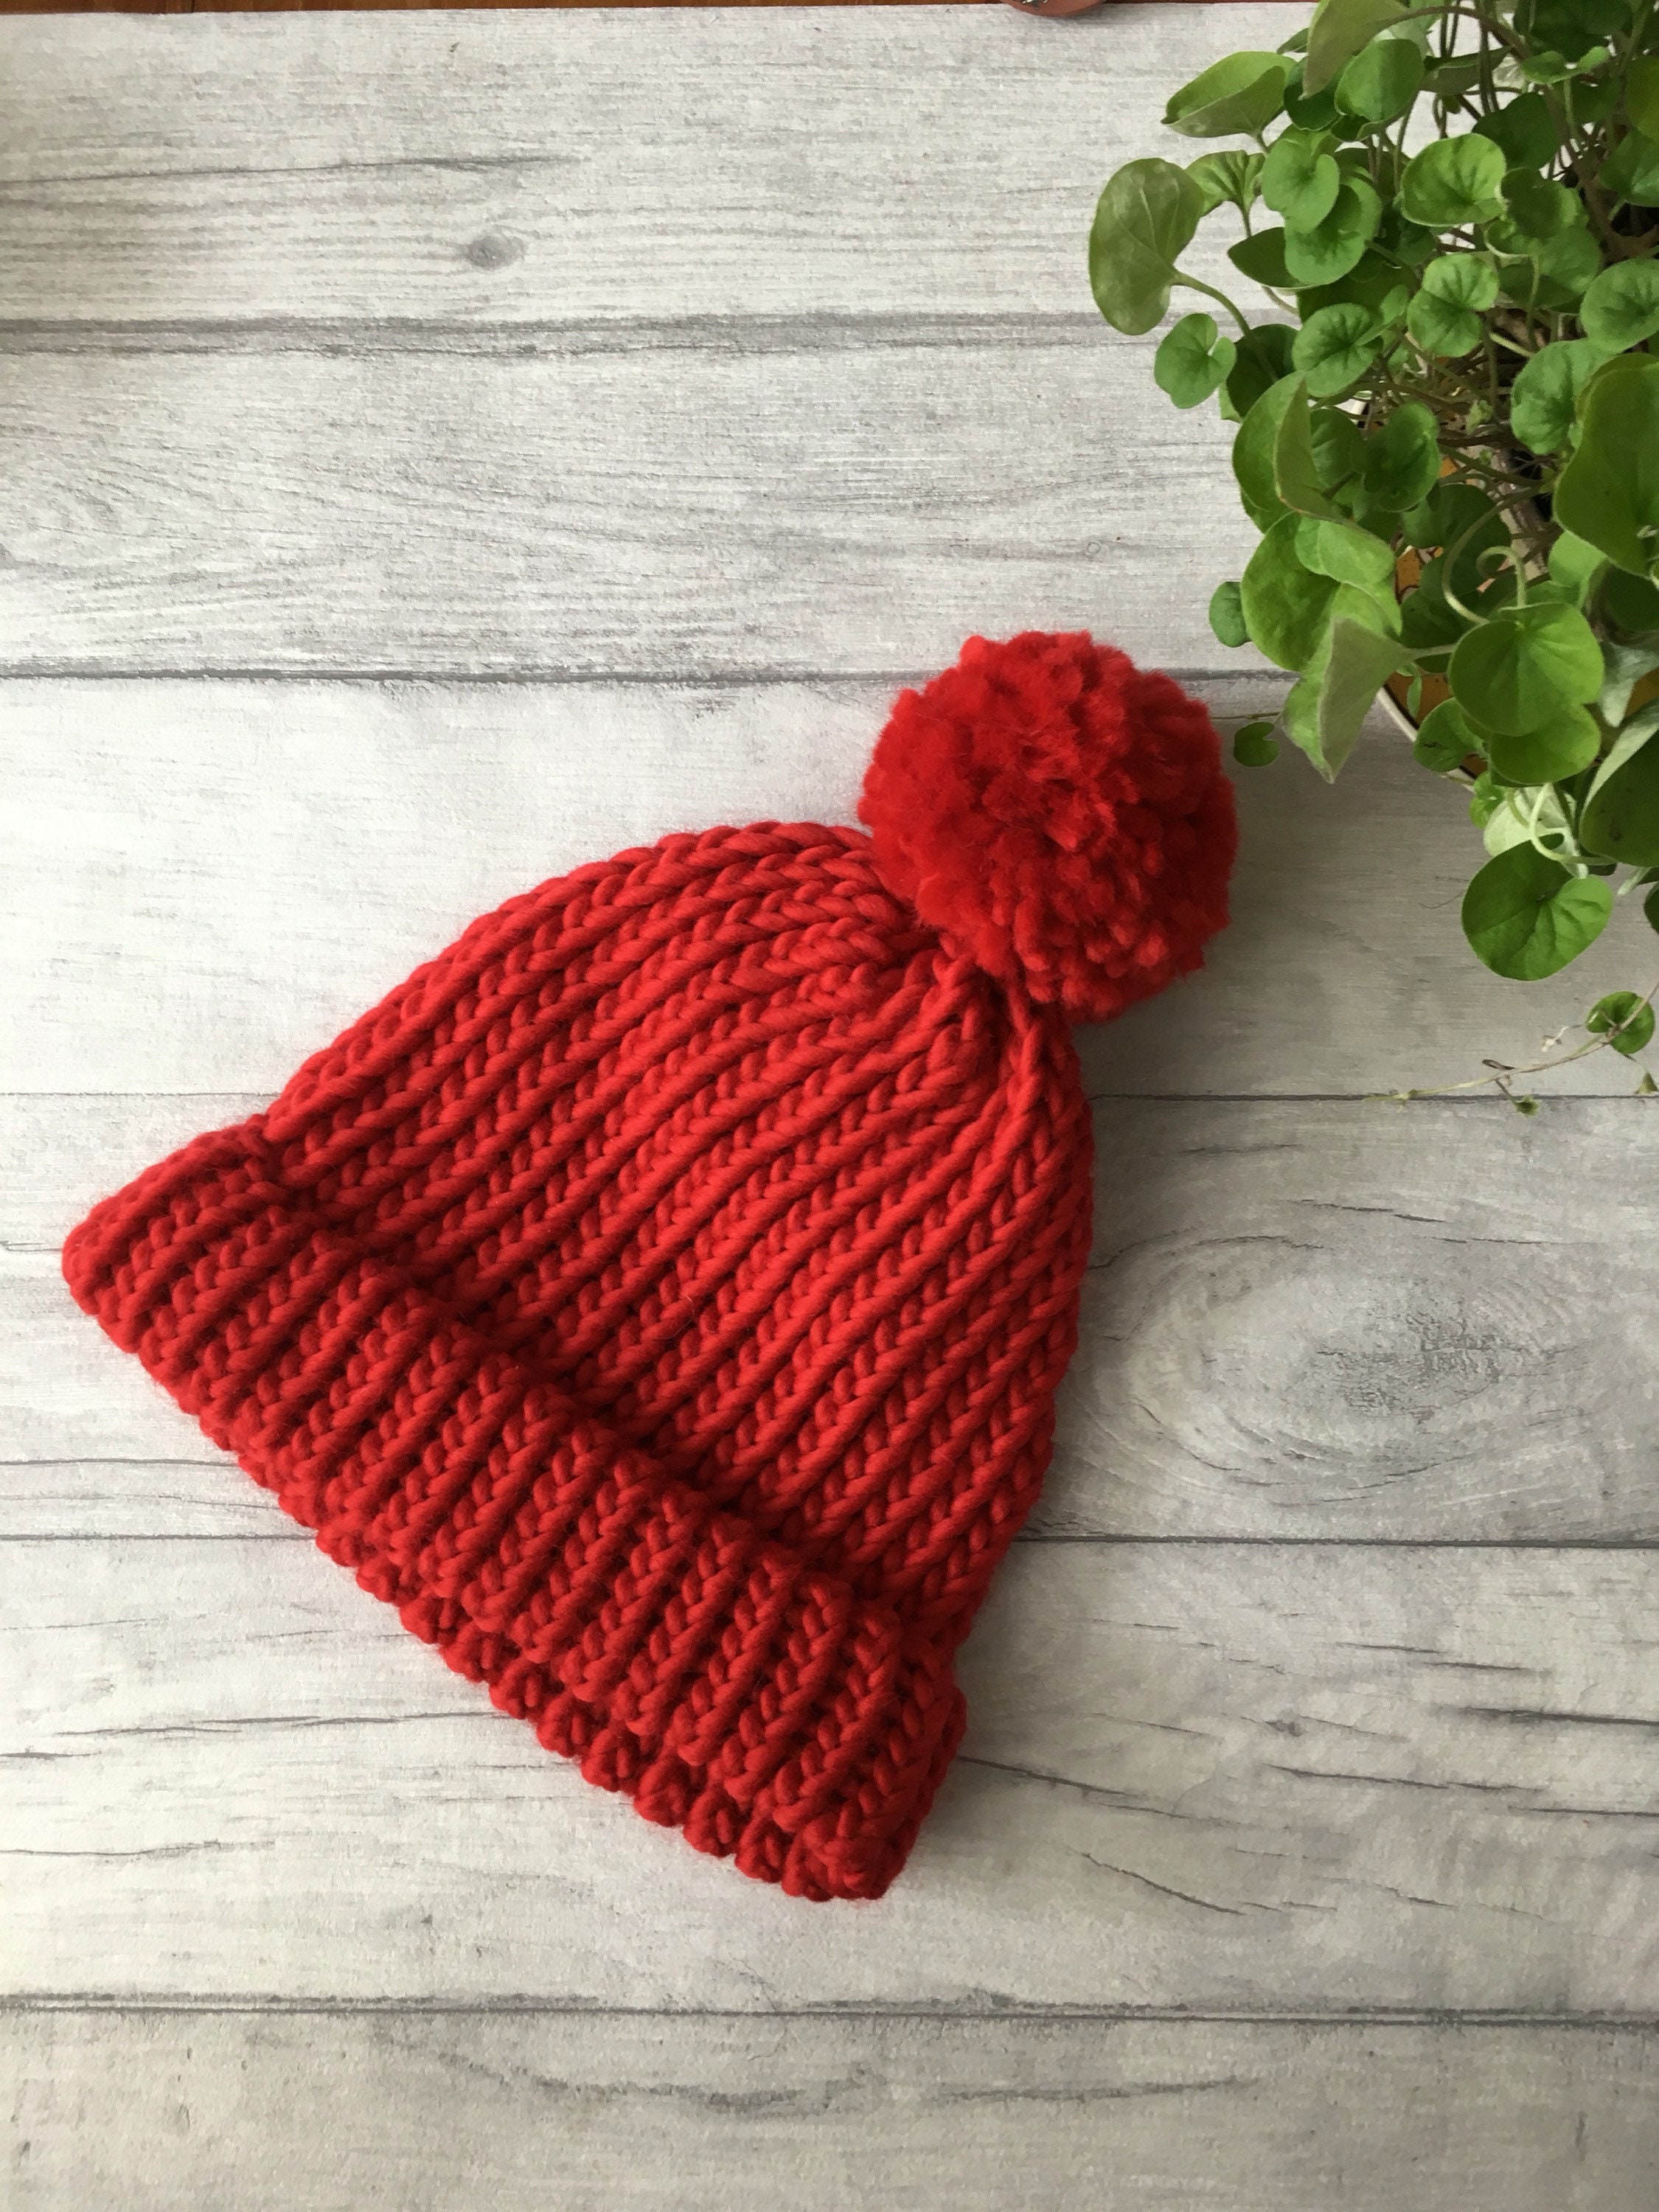 Long bonnet en laine à gros pompon tombant, très chaud et doux, rouge